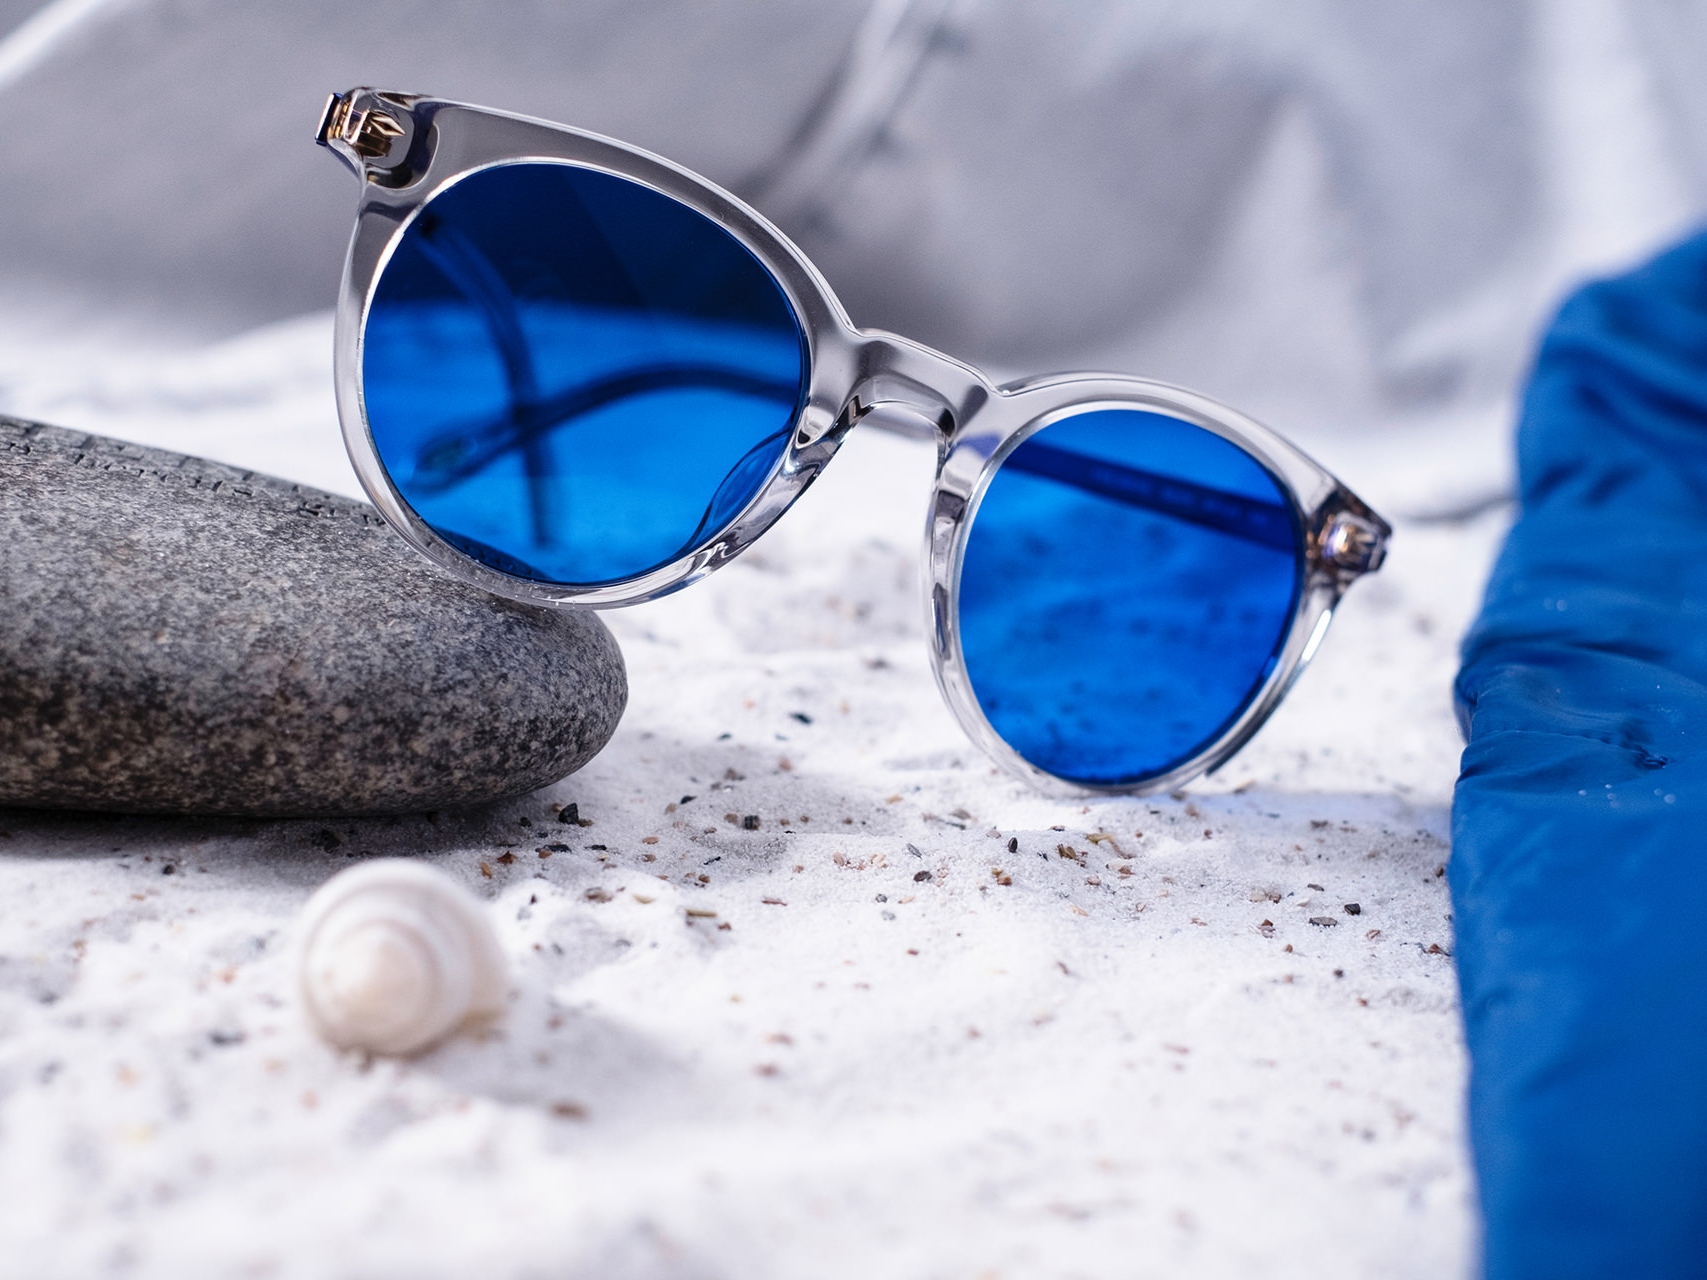 Obrázek páru slunečních brýlí s modrými skly, které jsou opřené o kámen